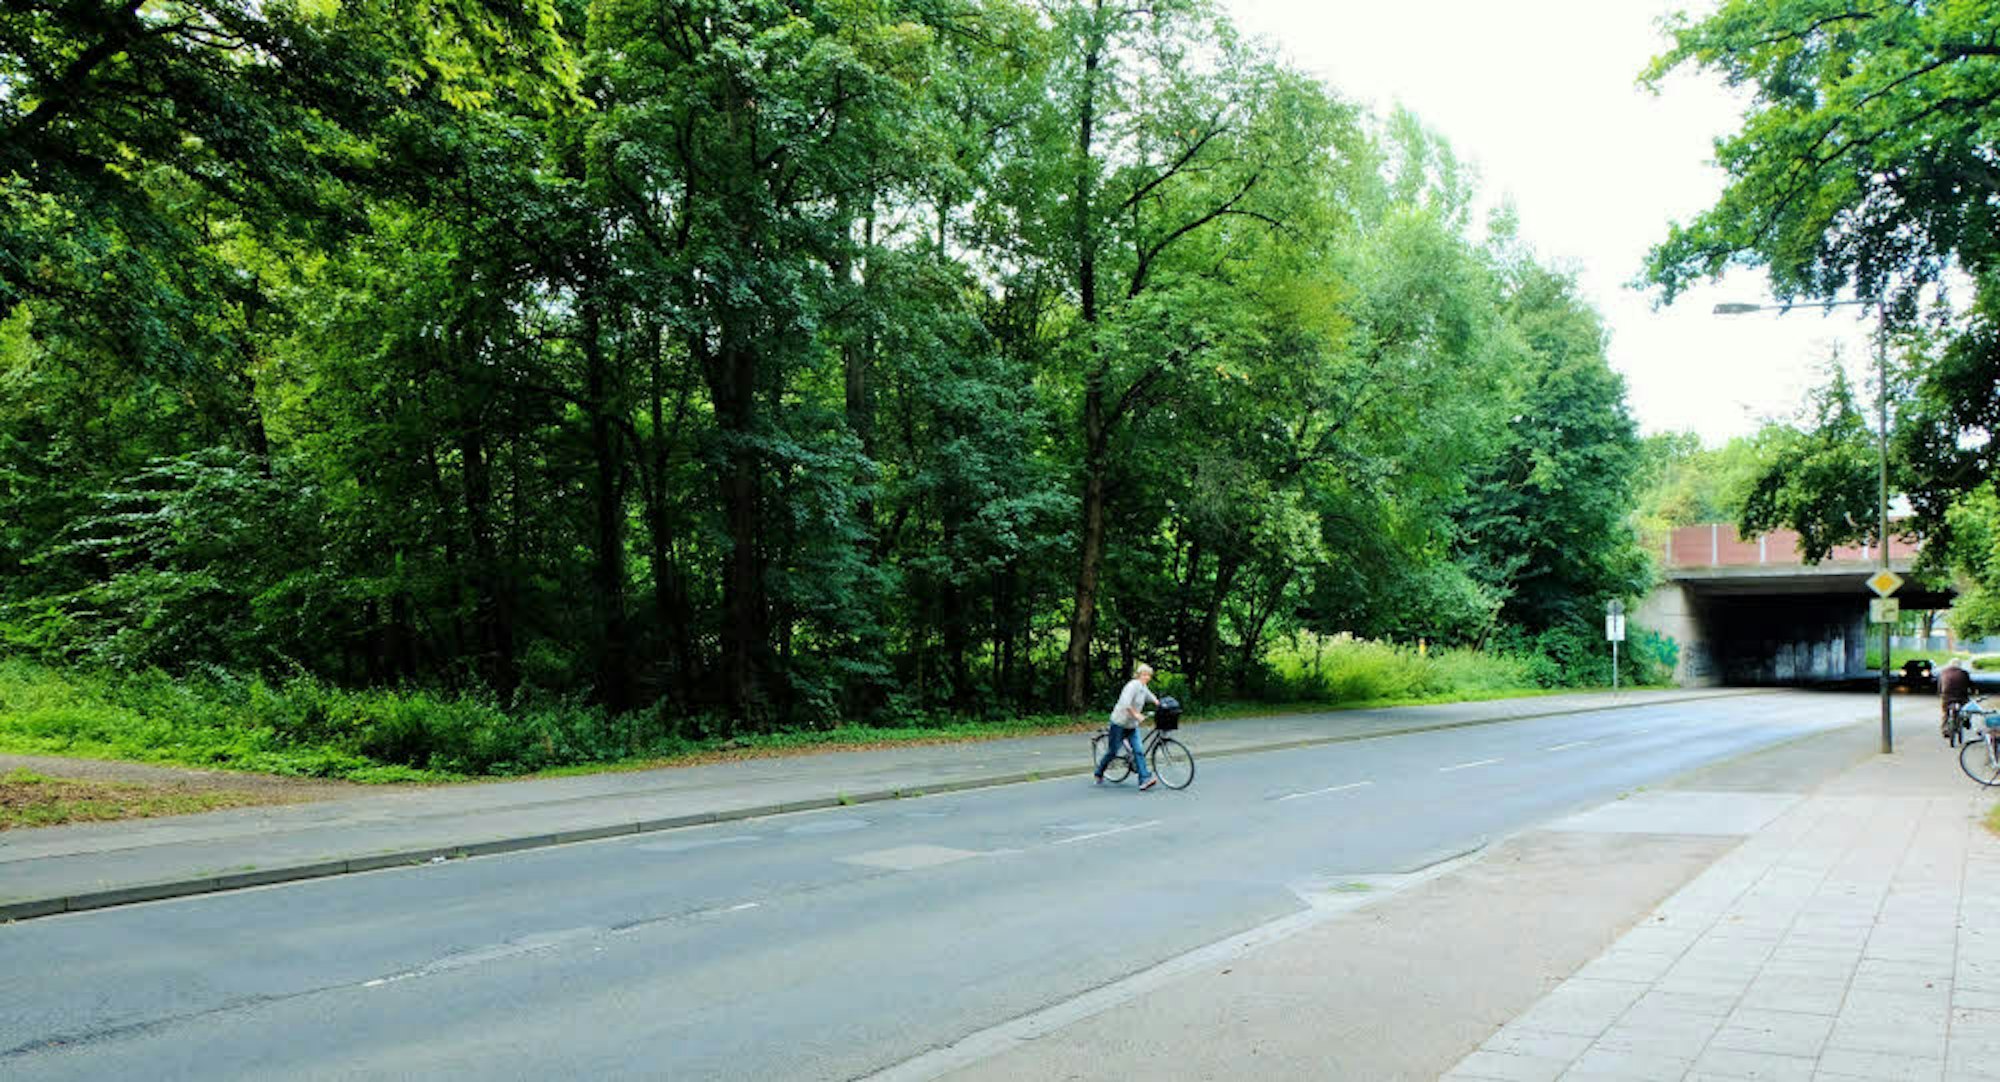 Aus Fahrtrichtung Köln kommend hört der Radweg auf, so dass man auf die andere Seite wechseln muss. 